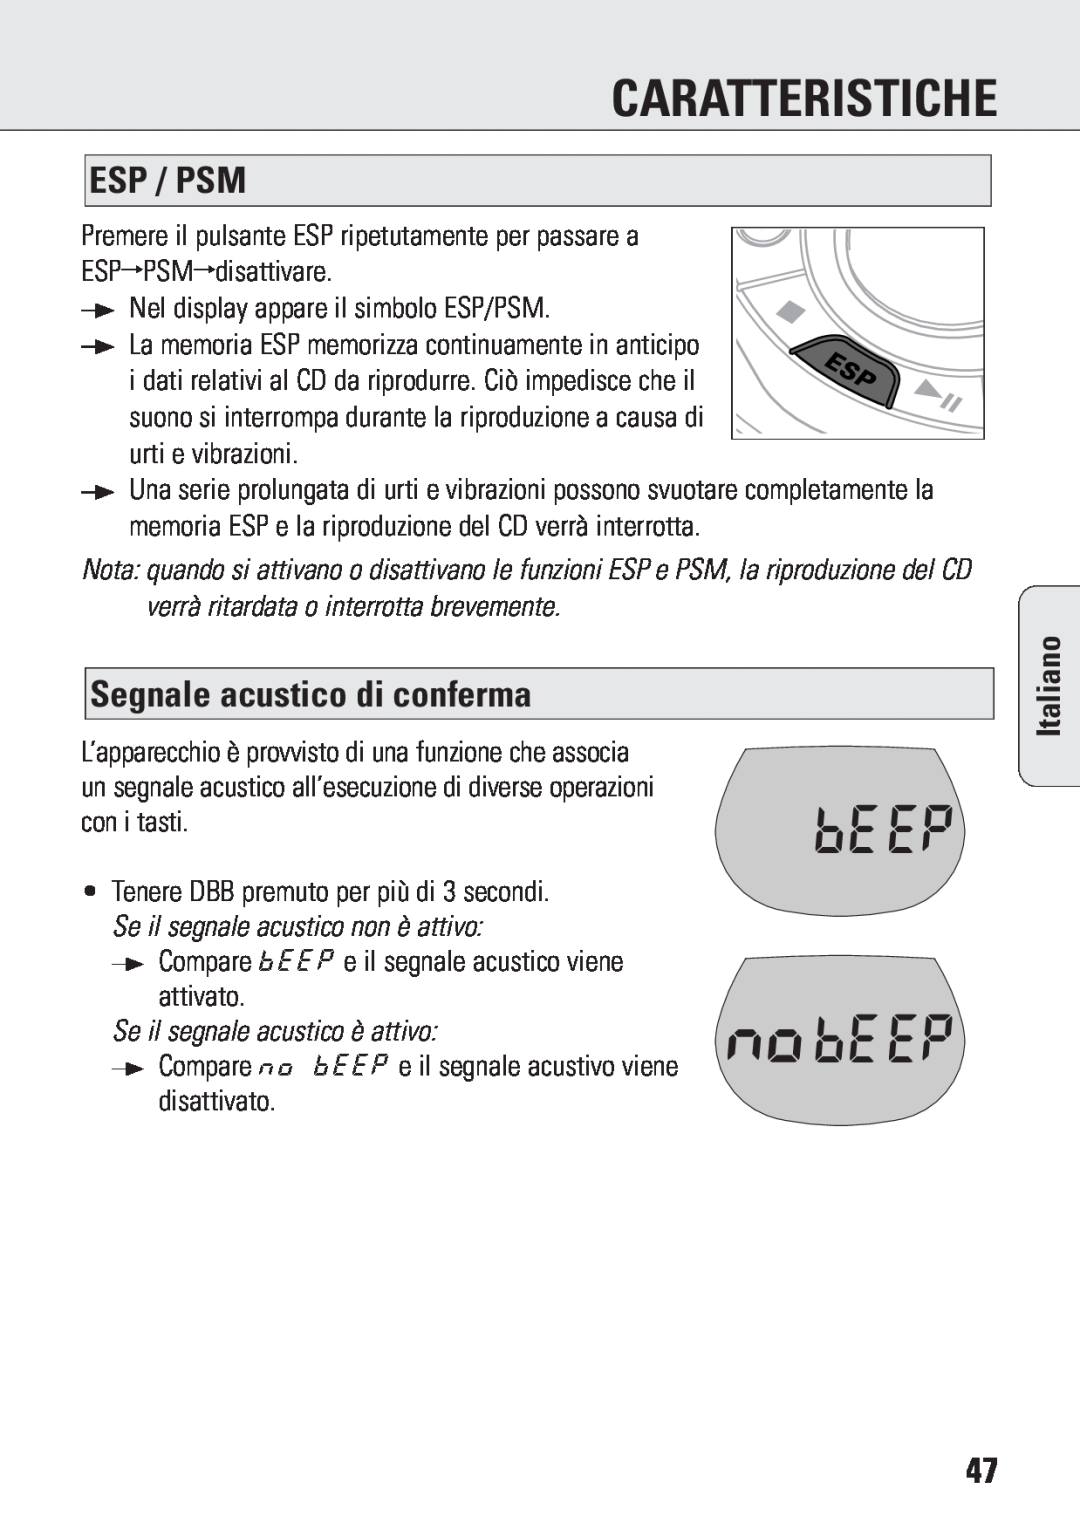 Philips ACT 7583 manual Segnale acustico di conferma, Se il segnale acustico è attivo, Caratteristiche, Esp / Psm, Italiano 